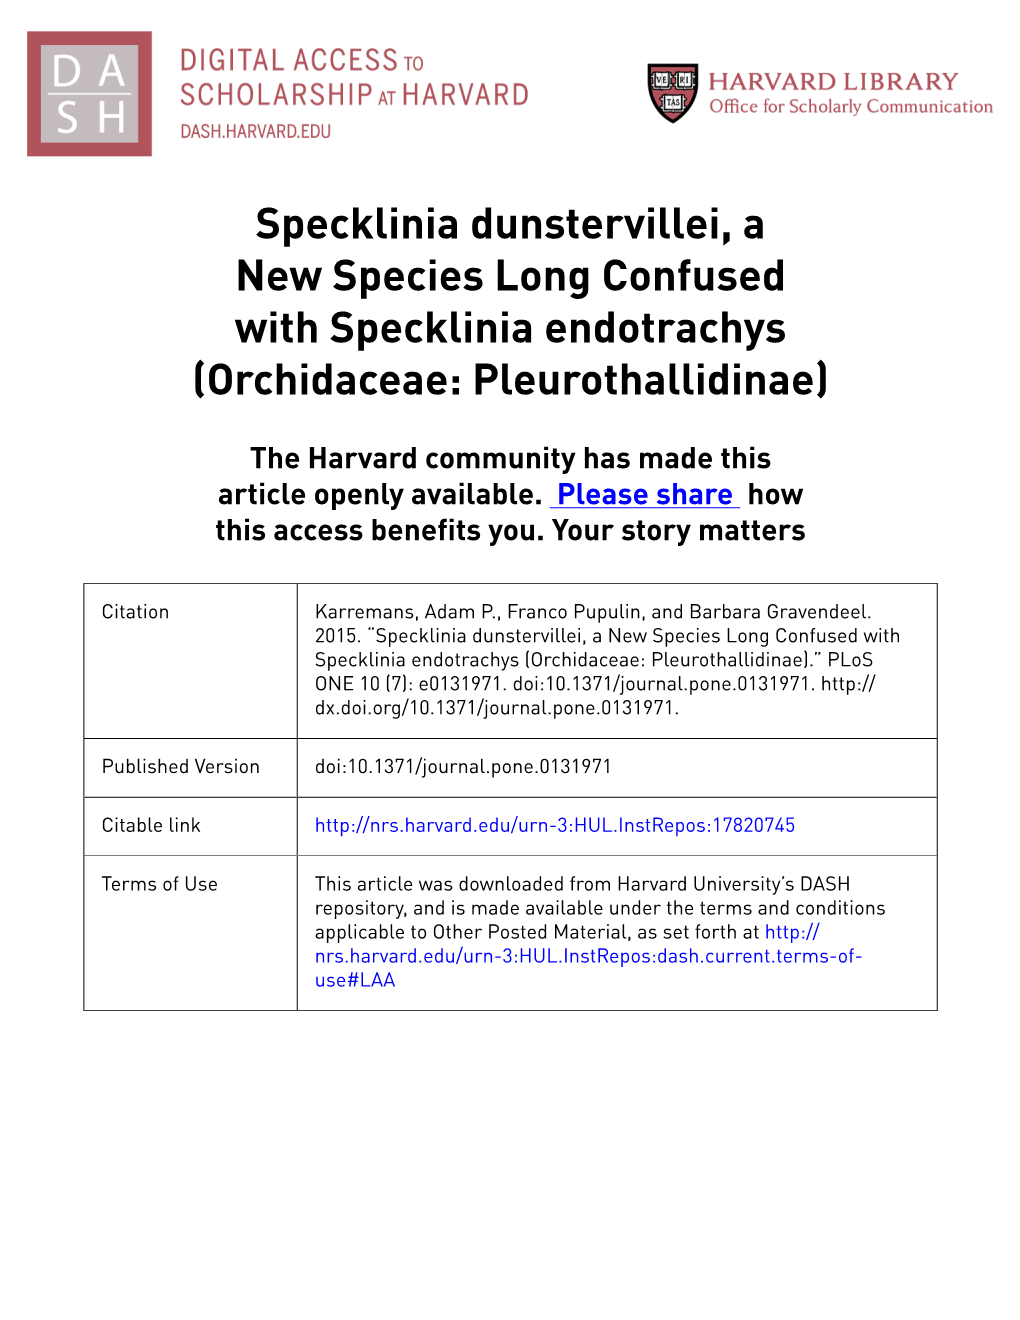 Specklinia Endotrachys (Orchidaceae: Pleurothallidinae)